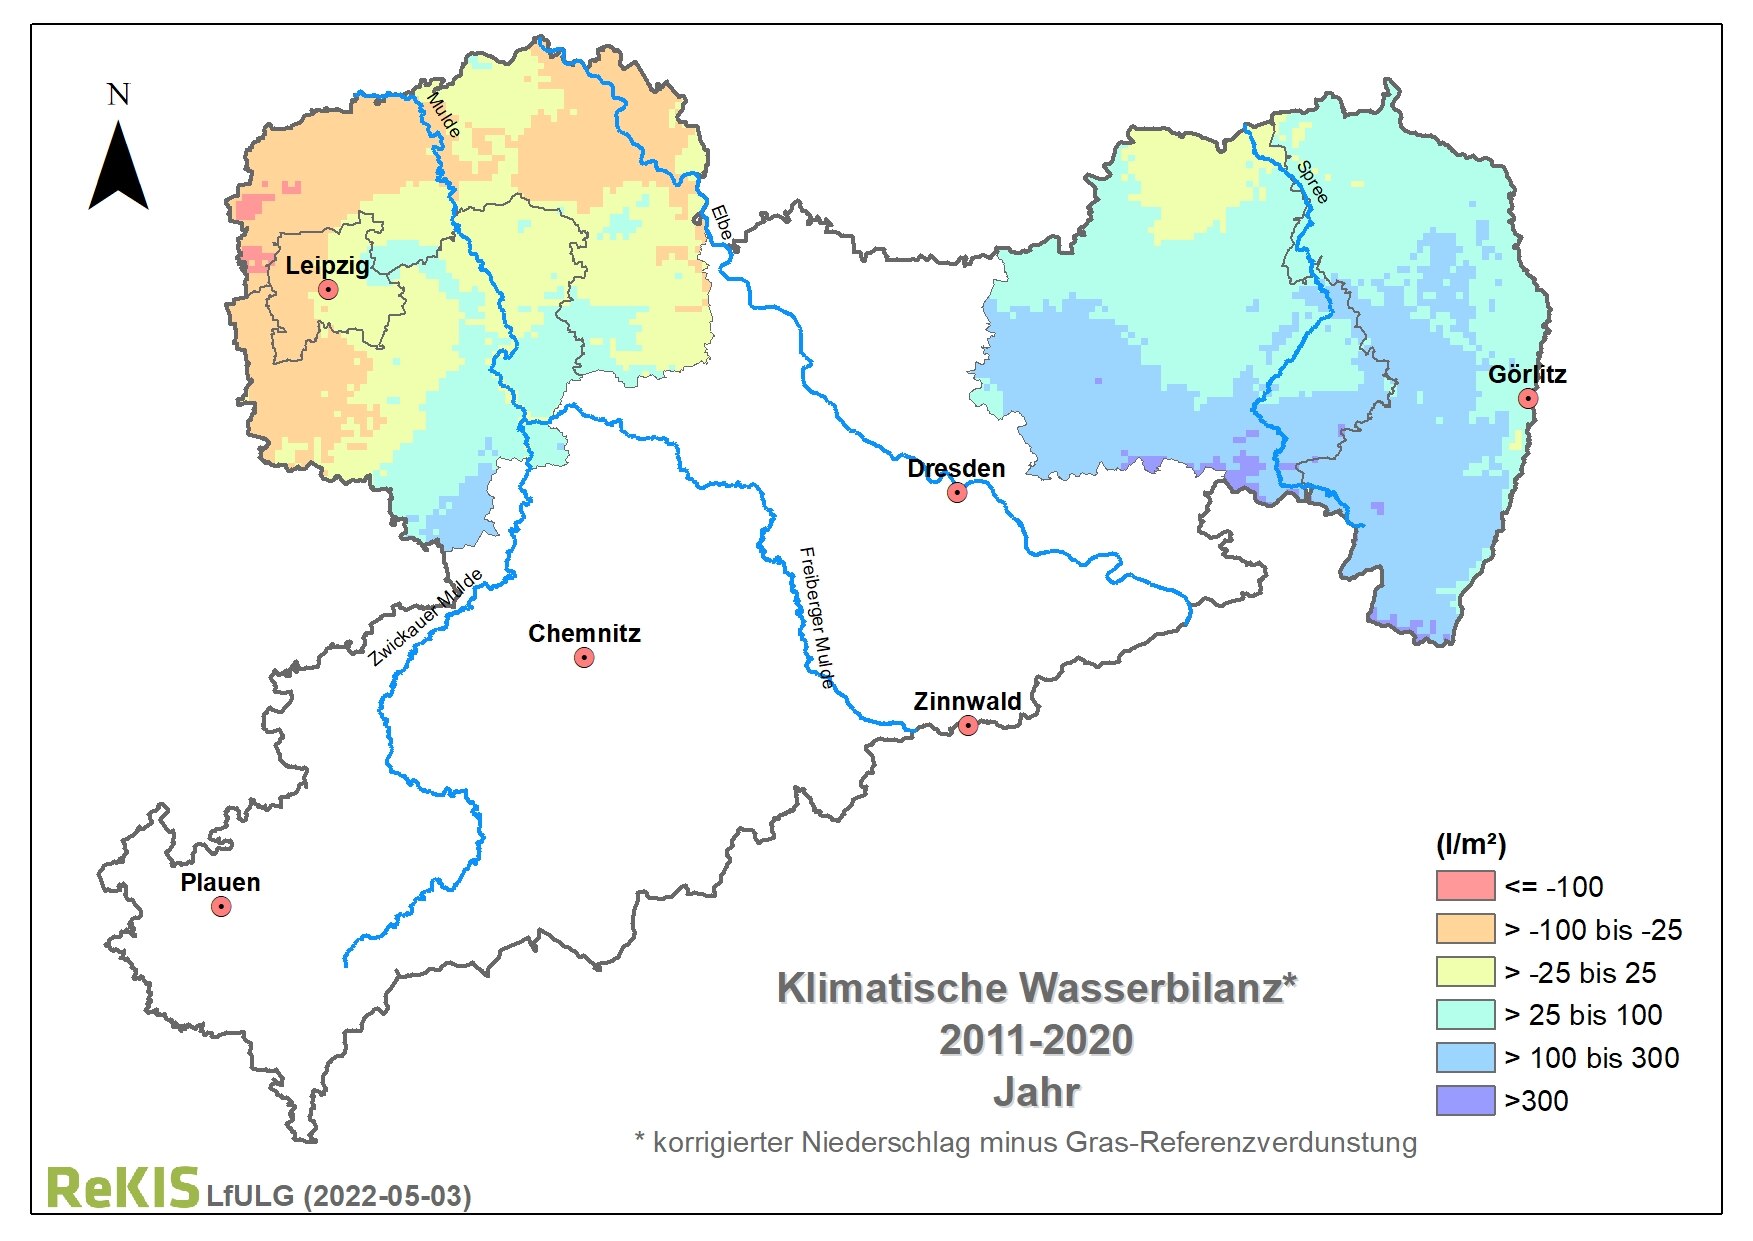 Karte mit klimatischer Wasserbilanz für die Strukturwandelregionen Nordsachsen und Lausitz